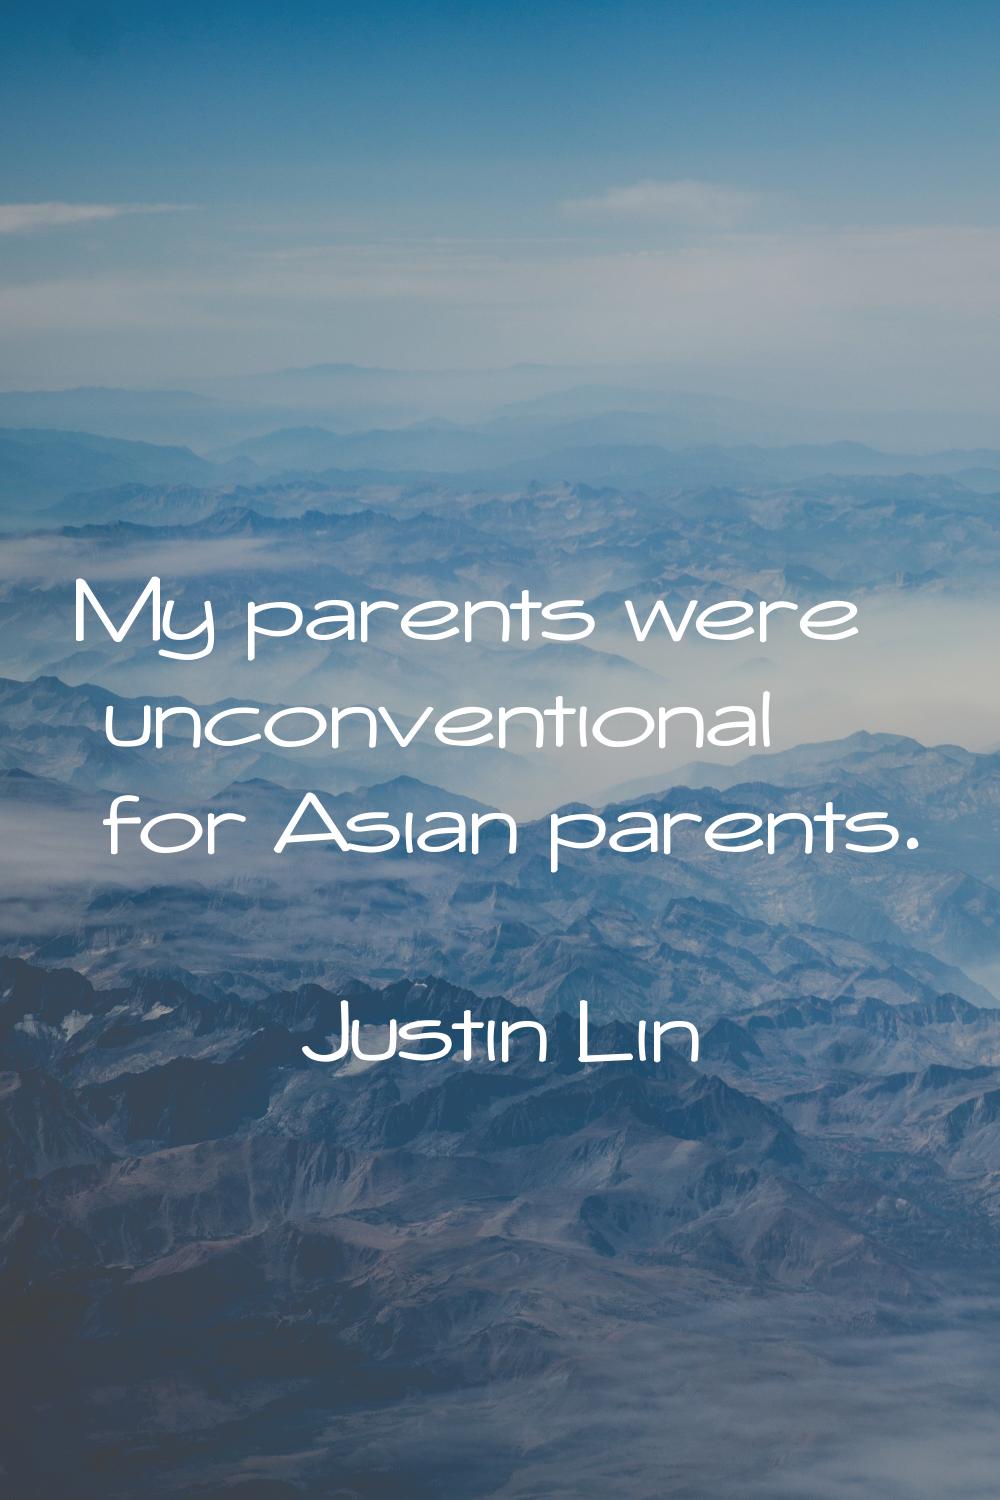 My parents were unconventional for Asian parents.